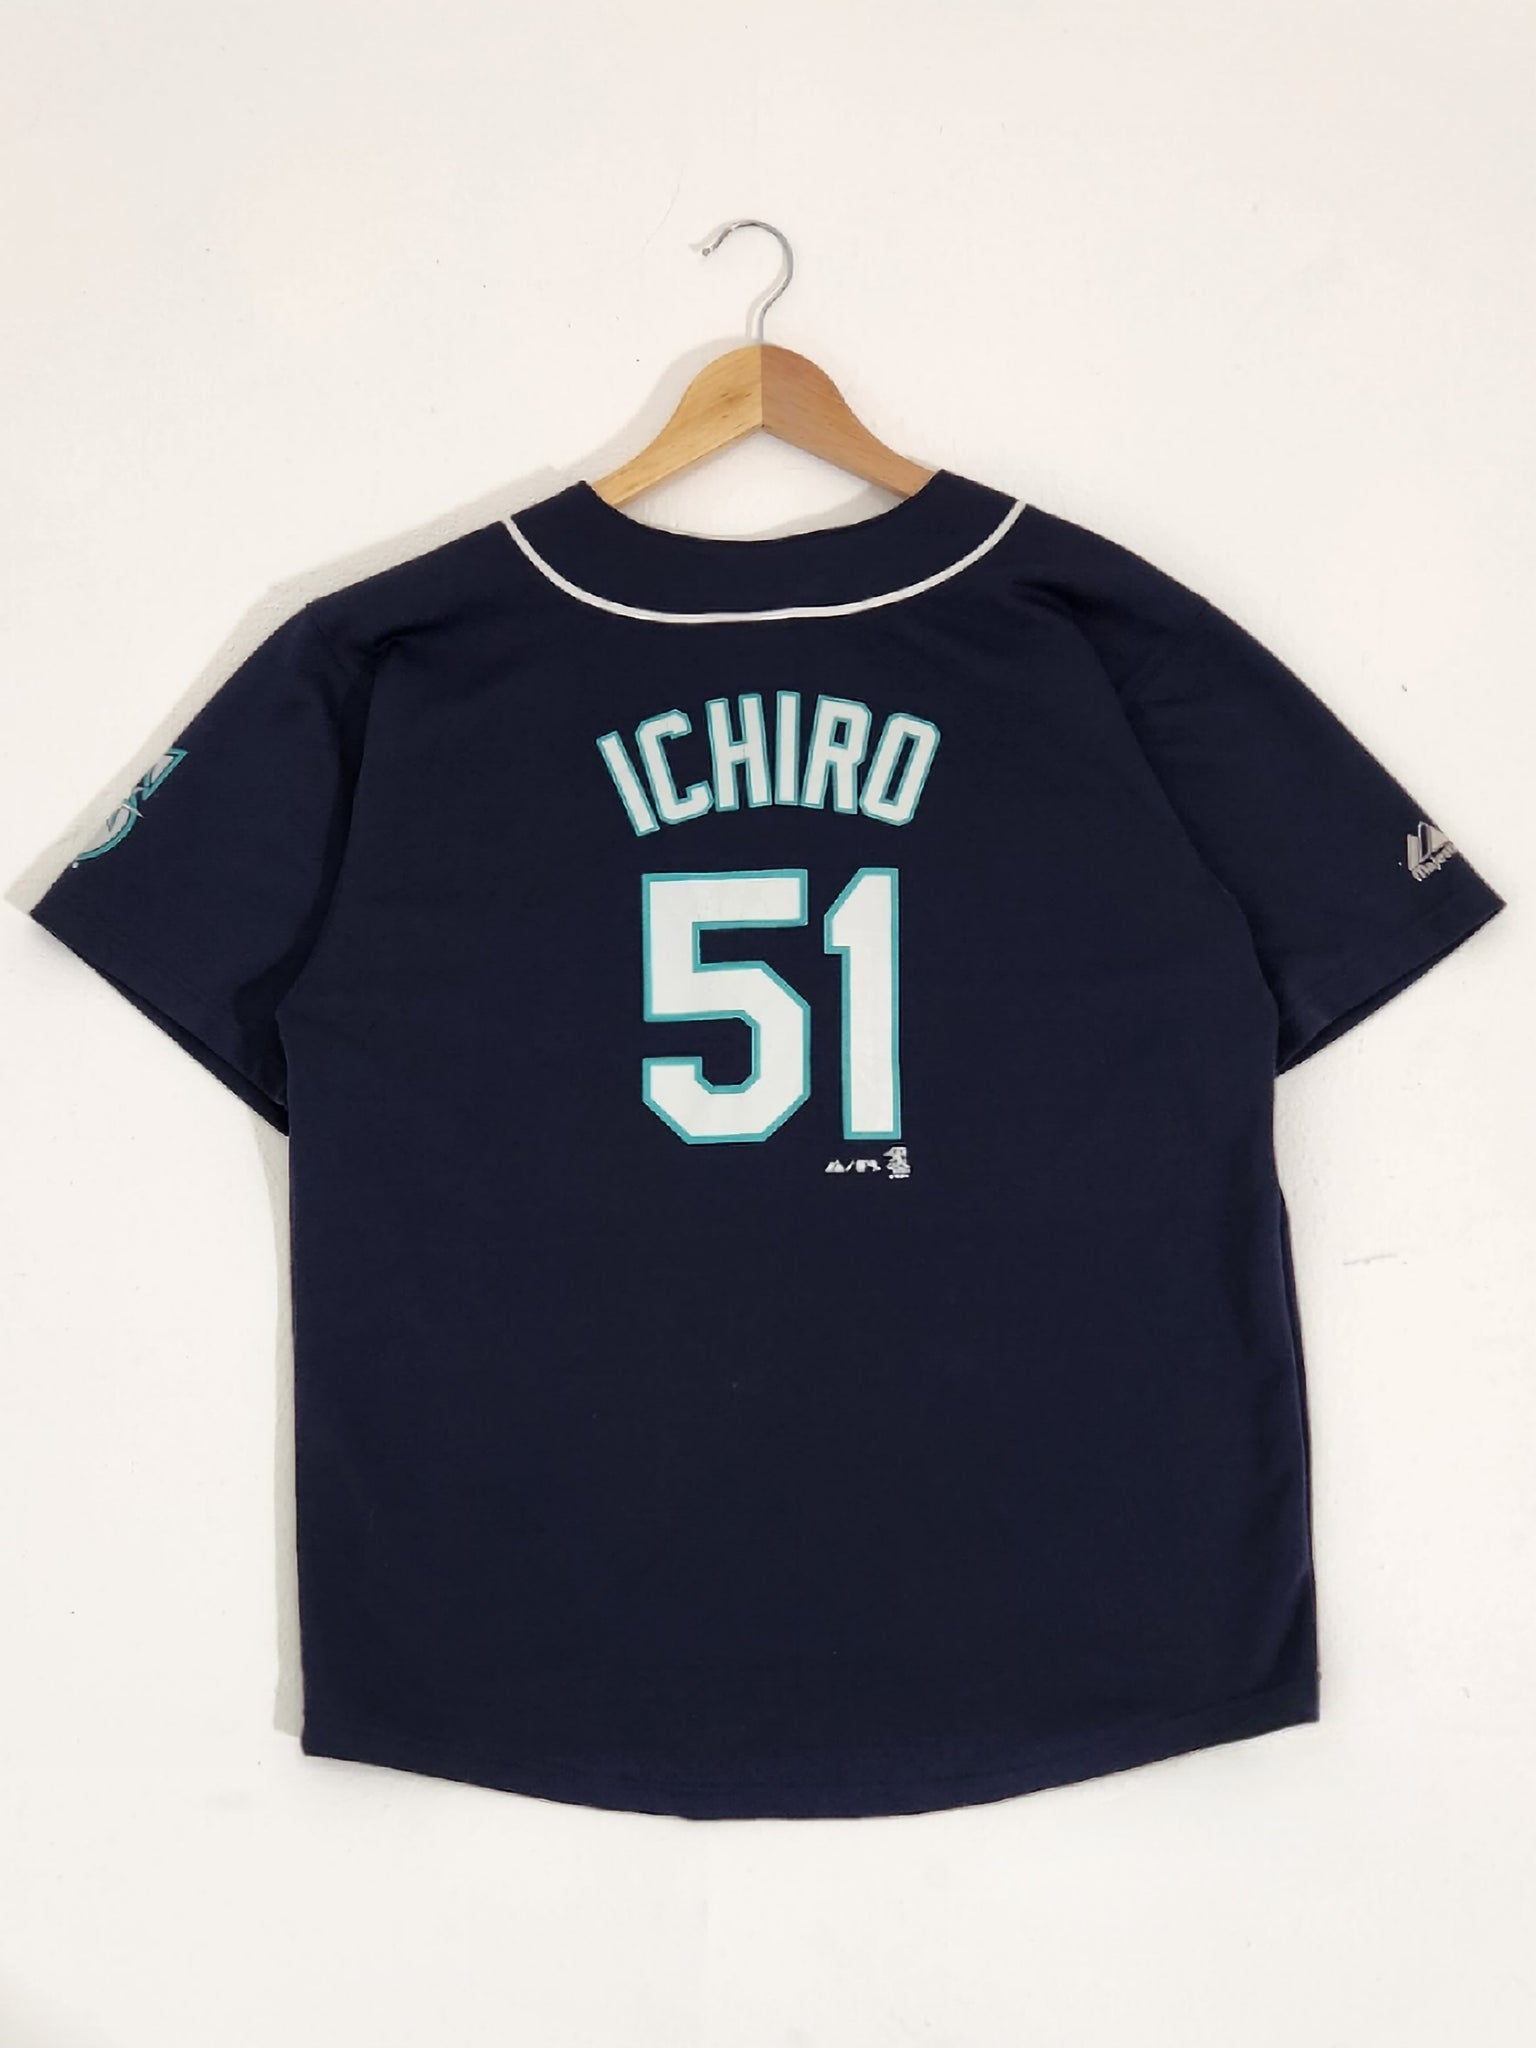 ichiro autographed jersey